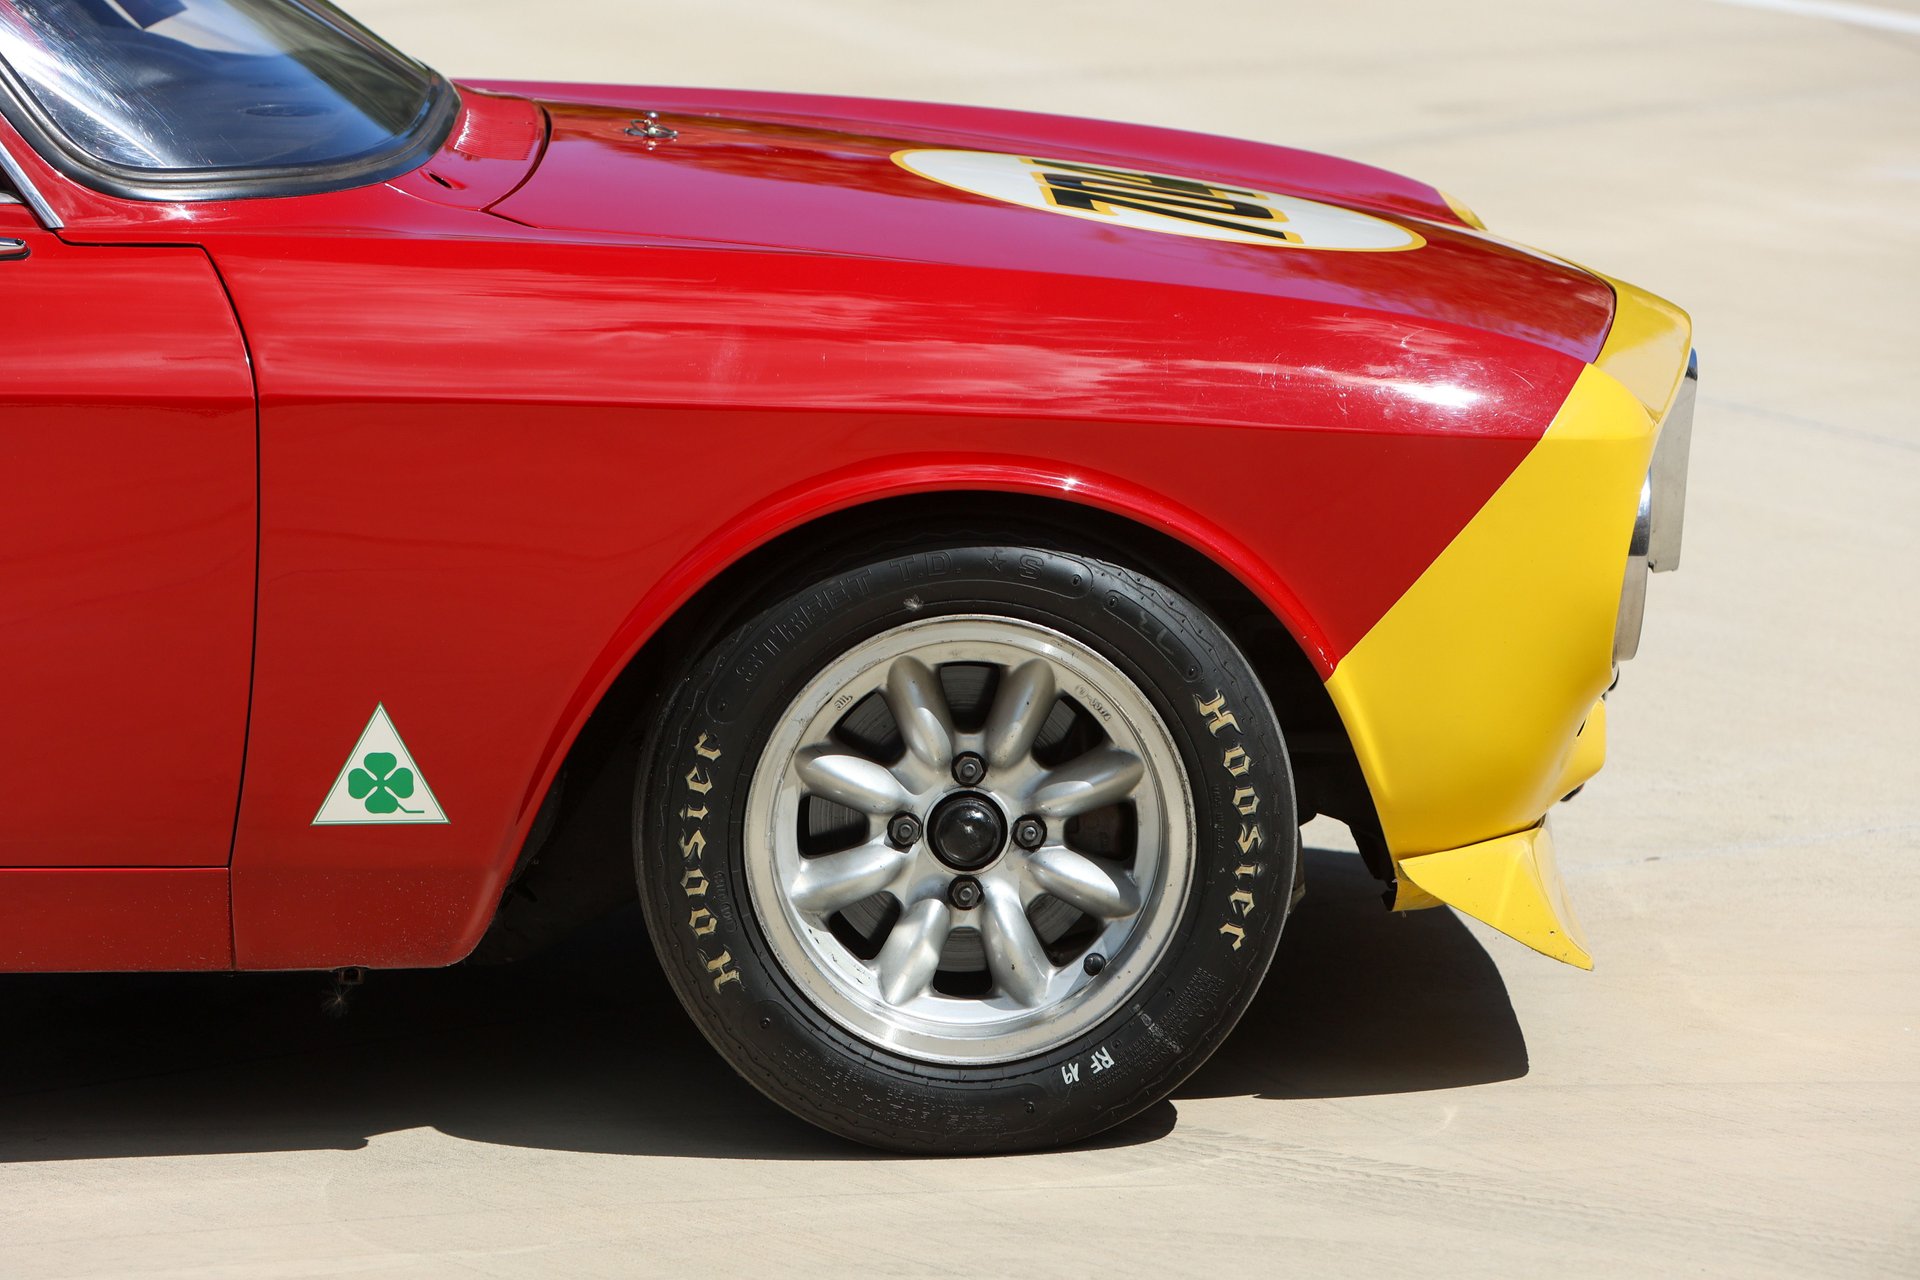 For Sale 1969 Alfa Romeo 1750 GTV Race Car